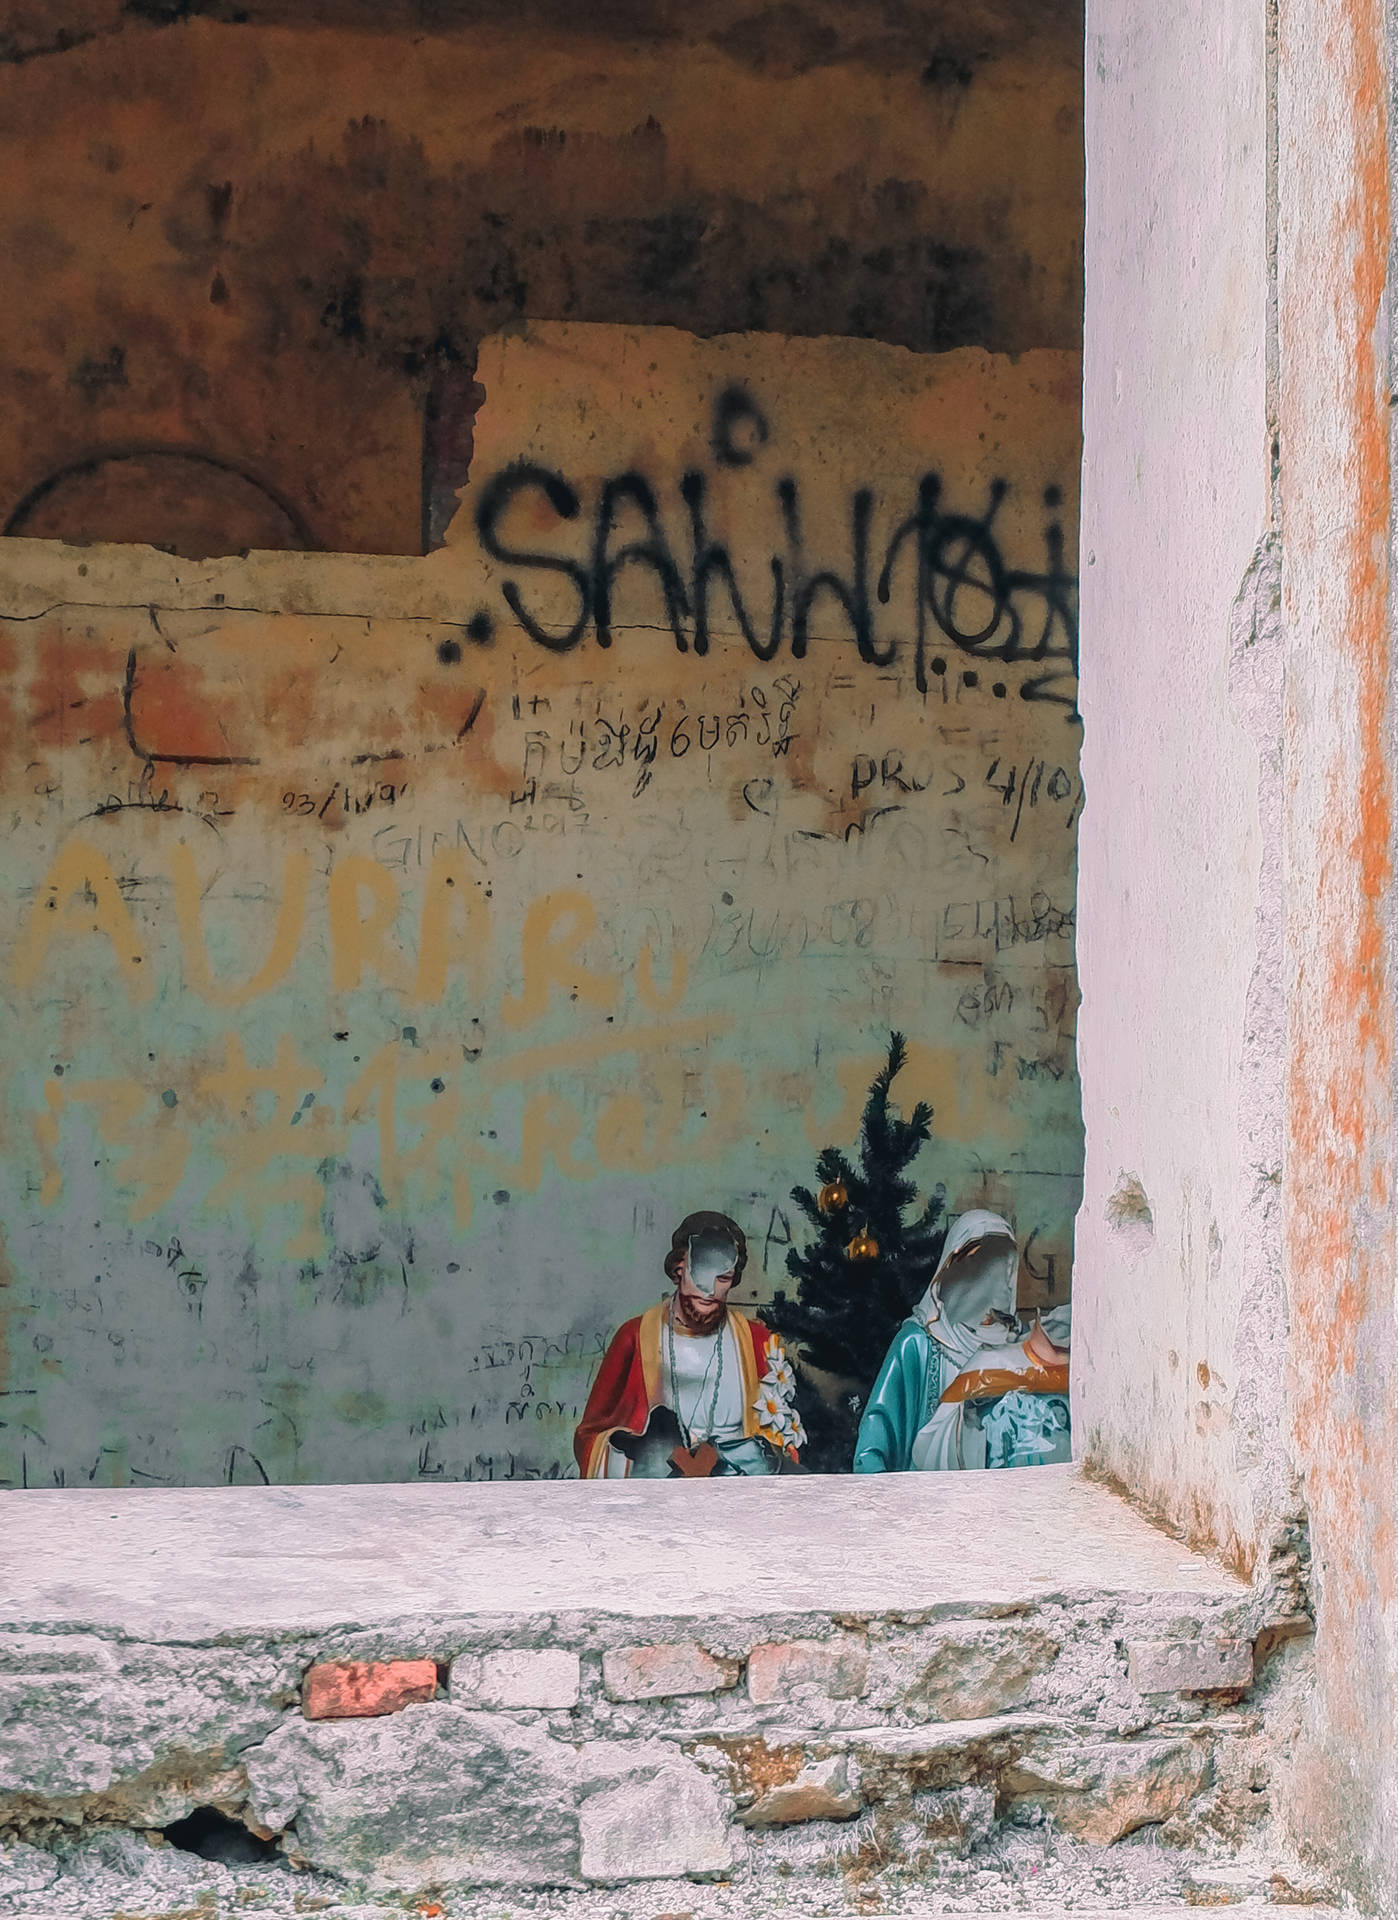 Cambodia Graffiti On Wall Background